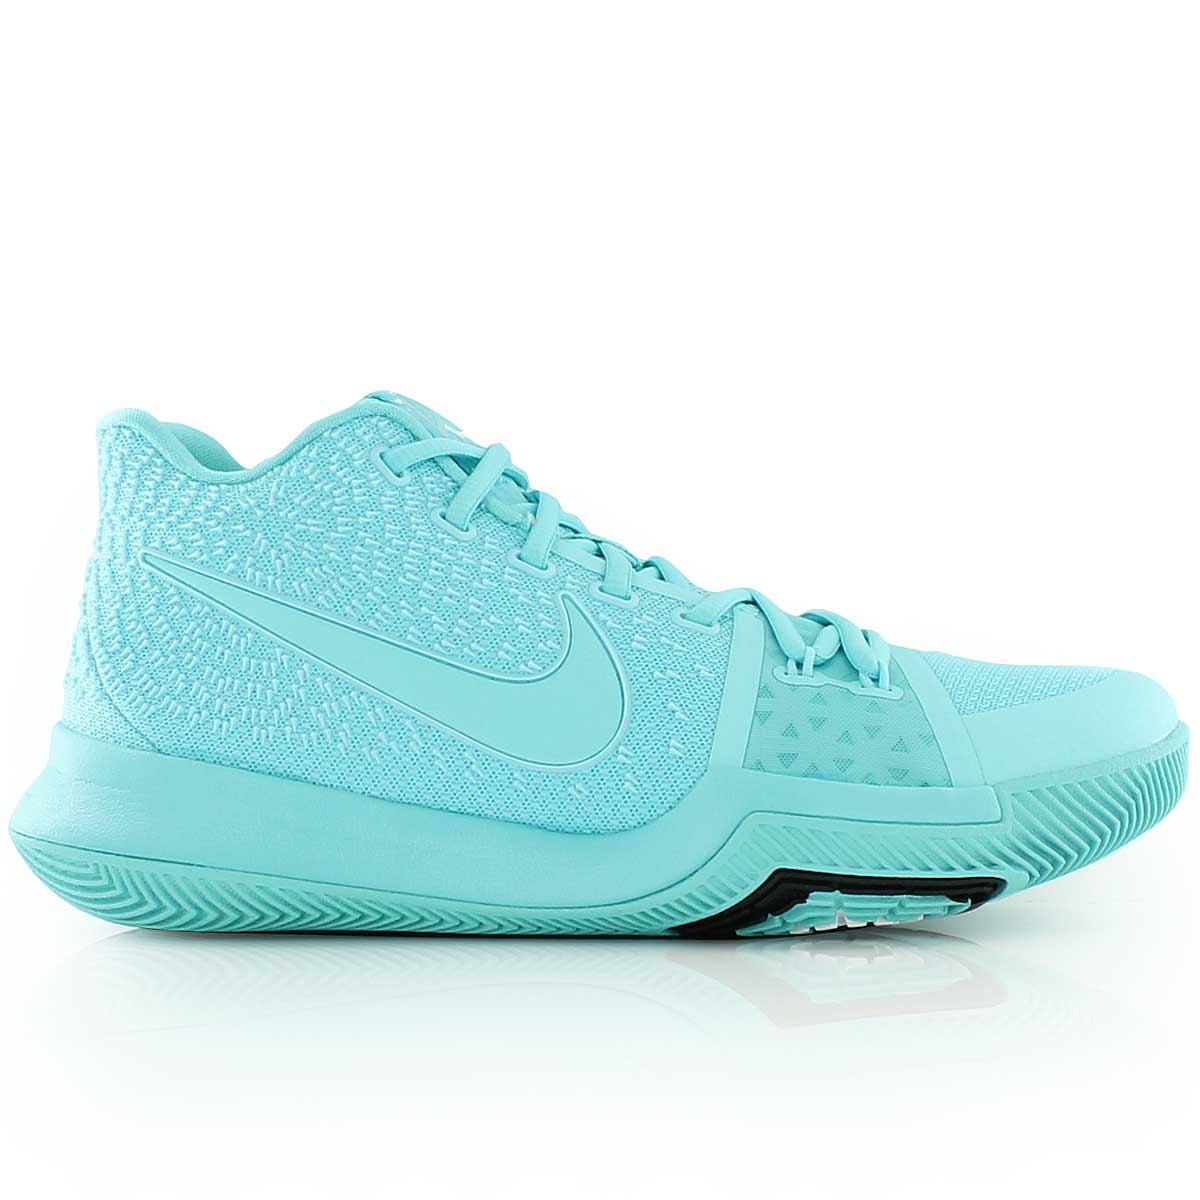 Баскетбольные кроссовки Nike Kyrie 3 "AQUA" - картинка